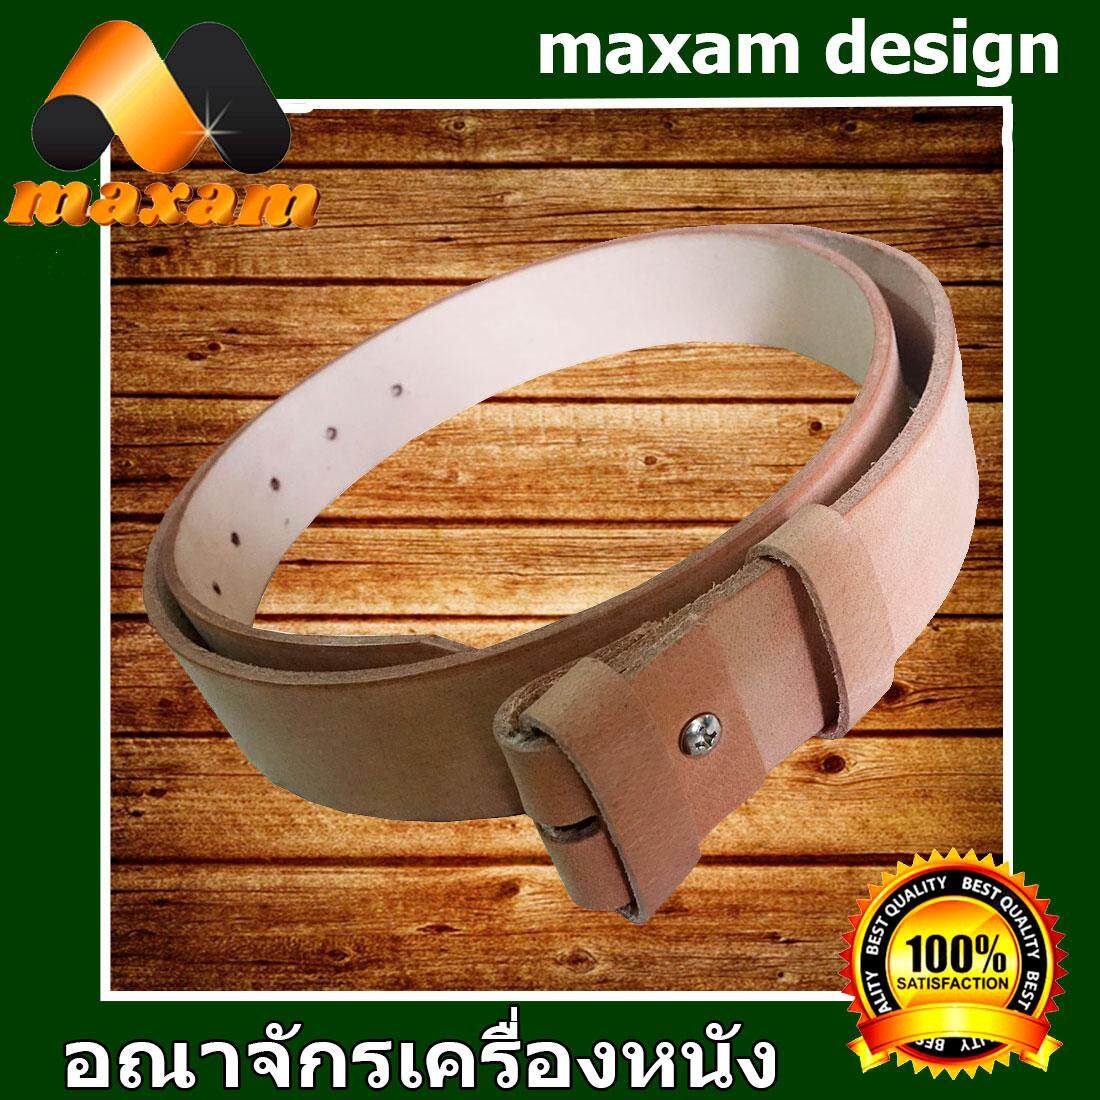 maxam design  ต้องใช้หนังแท้สิ!Genuine Cowhide Leather ใช้ของแท้ ใช้ทน ใช้นานใด้หลายปี นิศิตนักศึกษาชอบใช้  สายเข็มขัดหนังวัวอย่างแท้ๆ ยาวตลอดเส้น  48 นิ้ว เหมาะสำหรับท่านที่มีเอว 38-40-41-42-43 นิ้ว สีครีม  maxam design